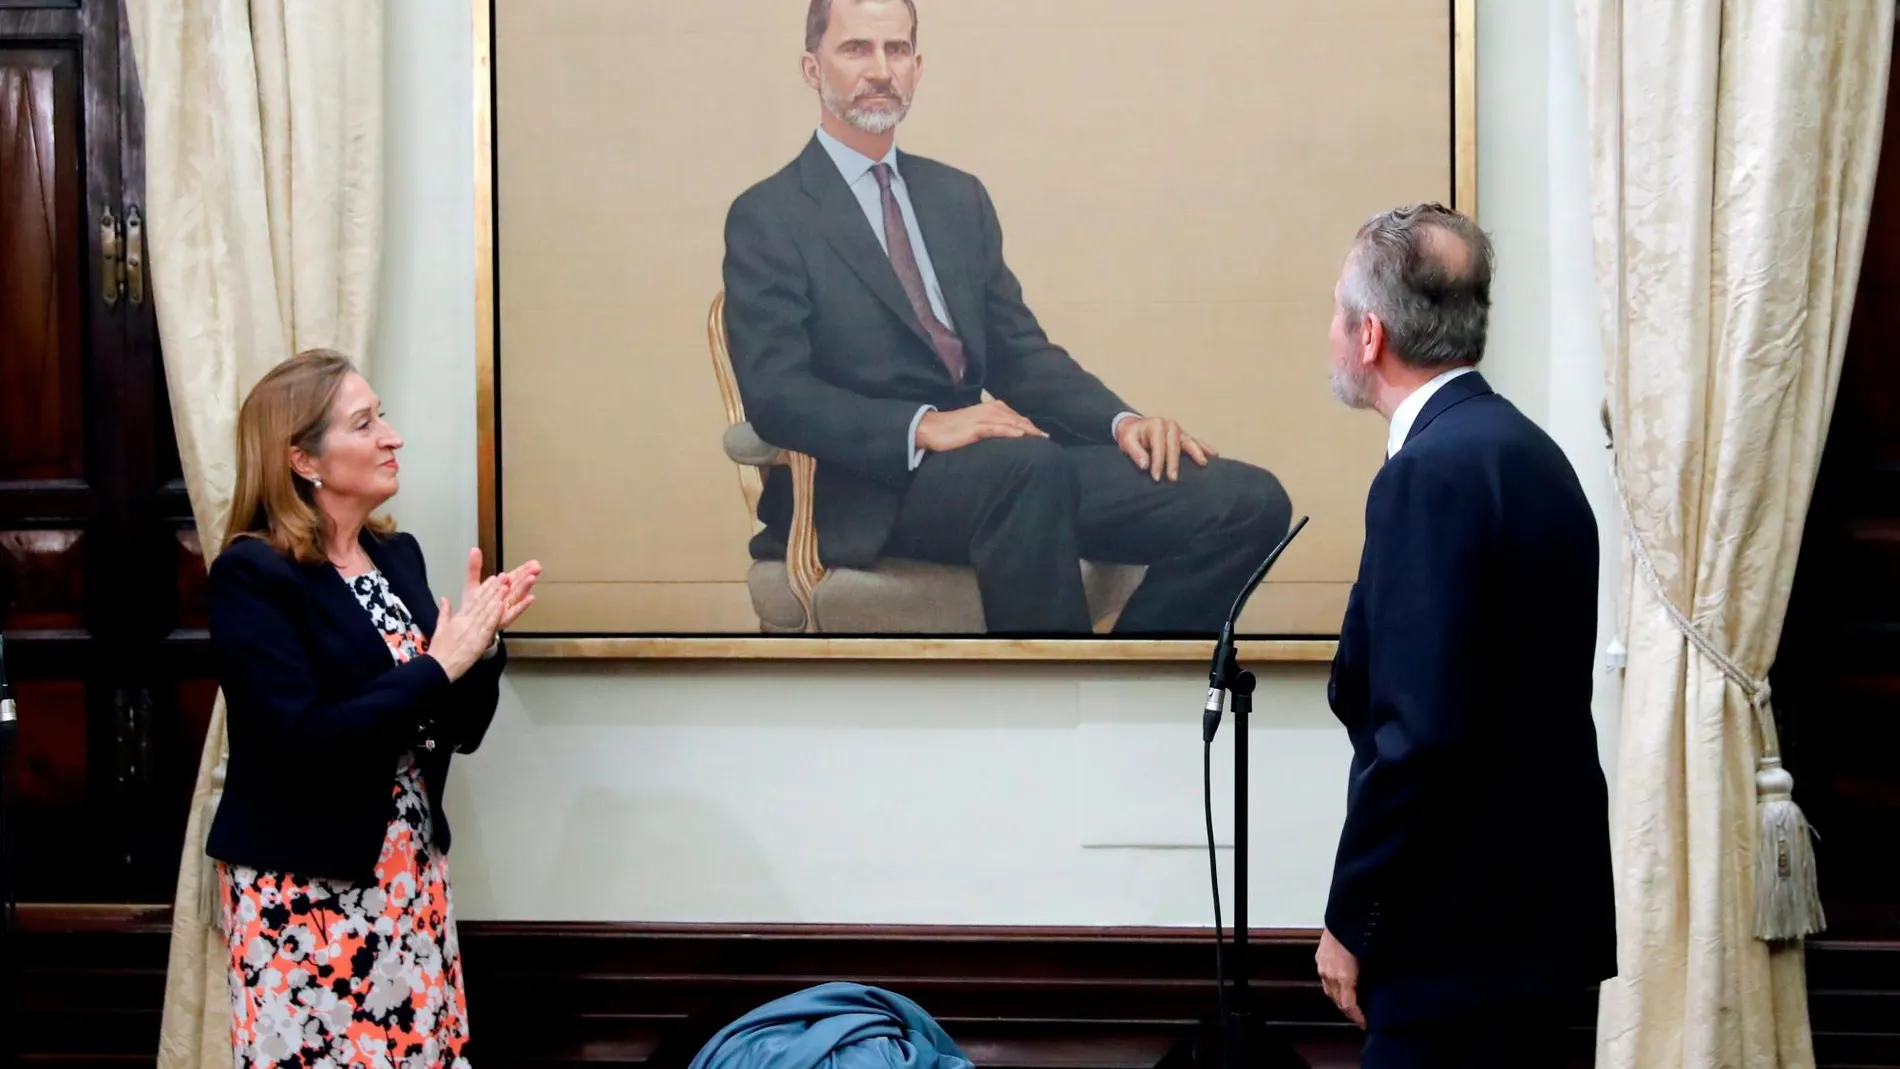 La presidenta del Congreso de los Diputados, Ana Pastor, durante la presentación este lunes el nuevo retrato de Felipe VI, realizado por el pintor Hernán Cortés